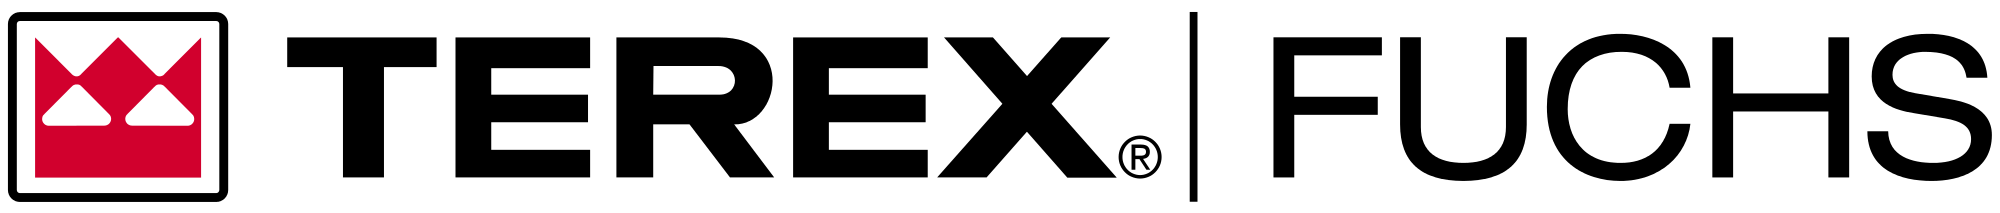 Terex Logo - Terex Fuchs Logo.svg